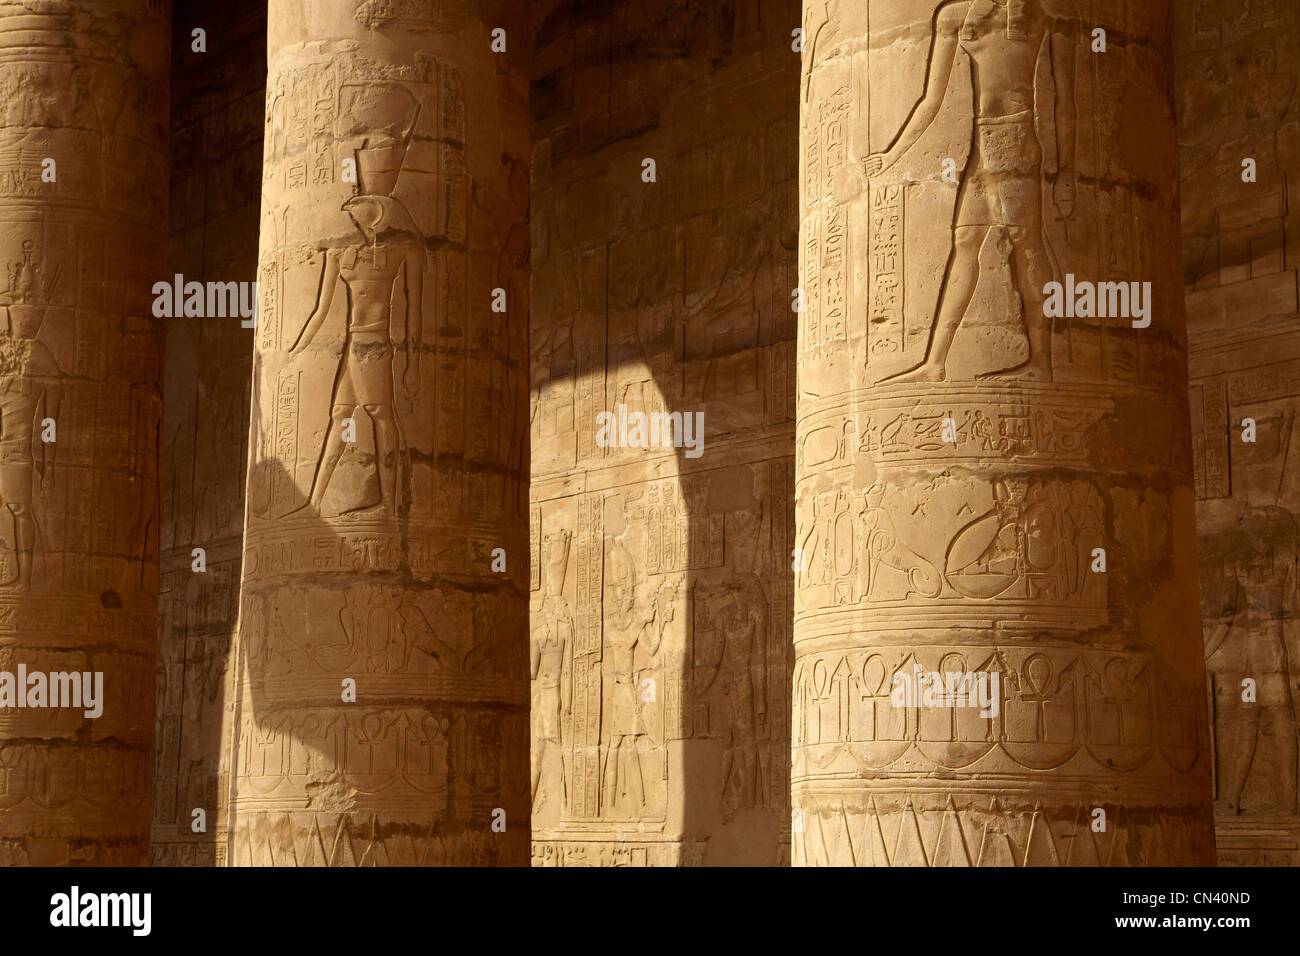 Egypt - Edfu, Temple of Horus, detail of pillars Stock Photo